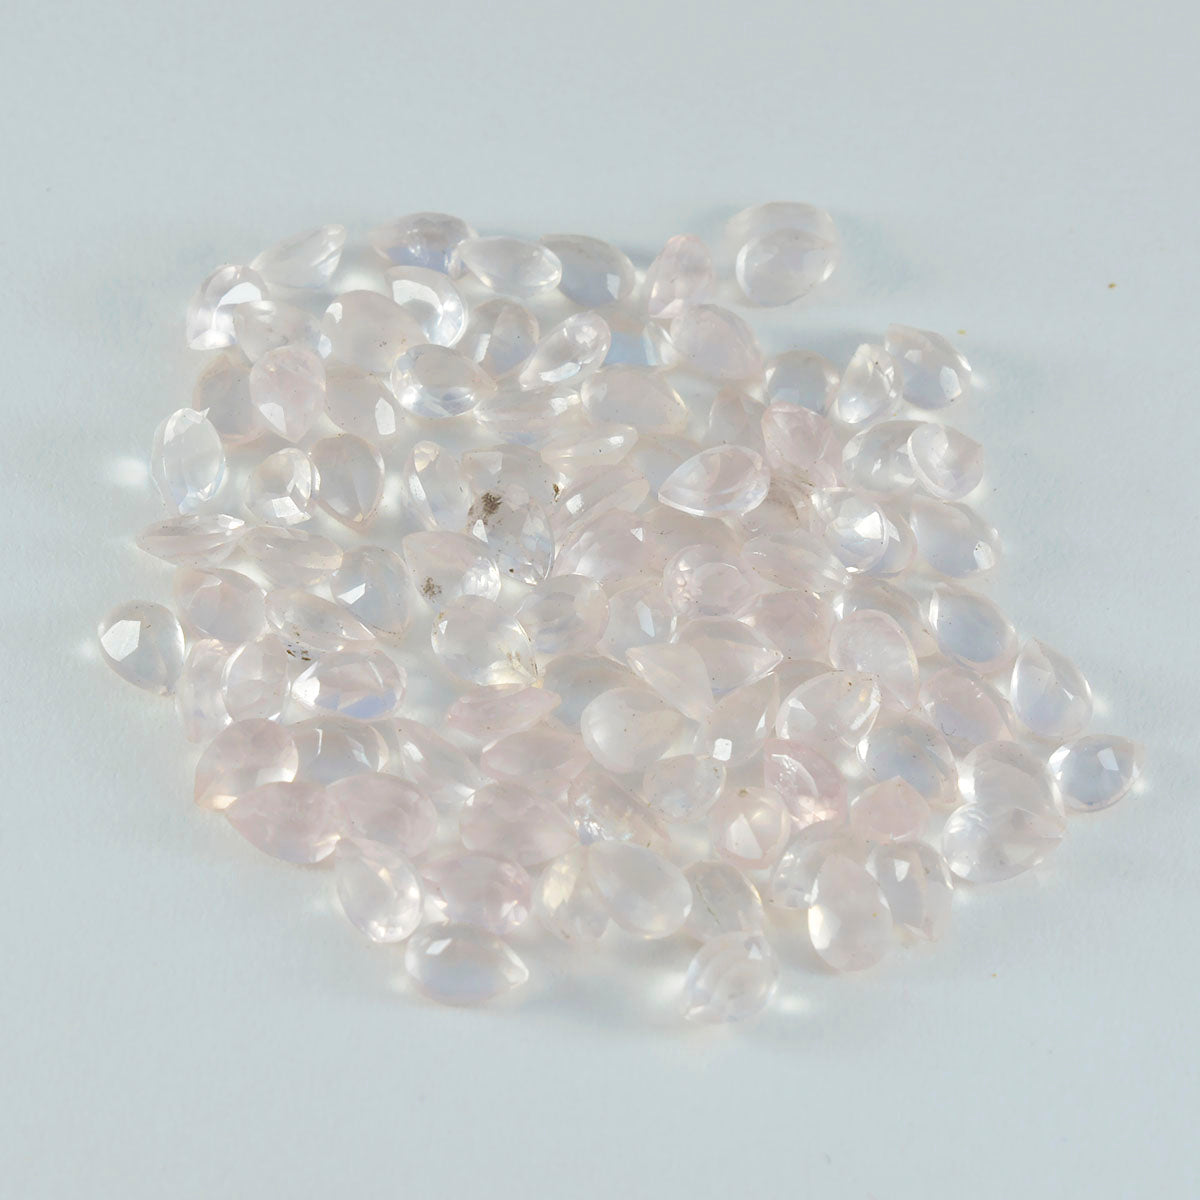 riyogems 1шт розовый кварц граненый 3x5 мм грушевидной формы драгоценный камень замечательного качества